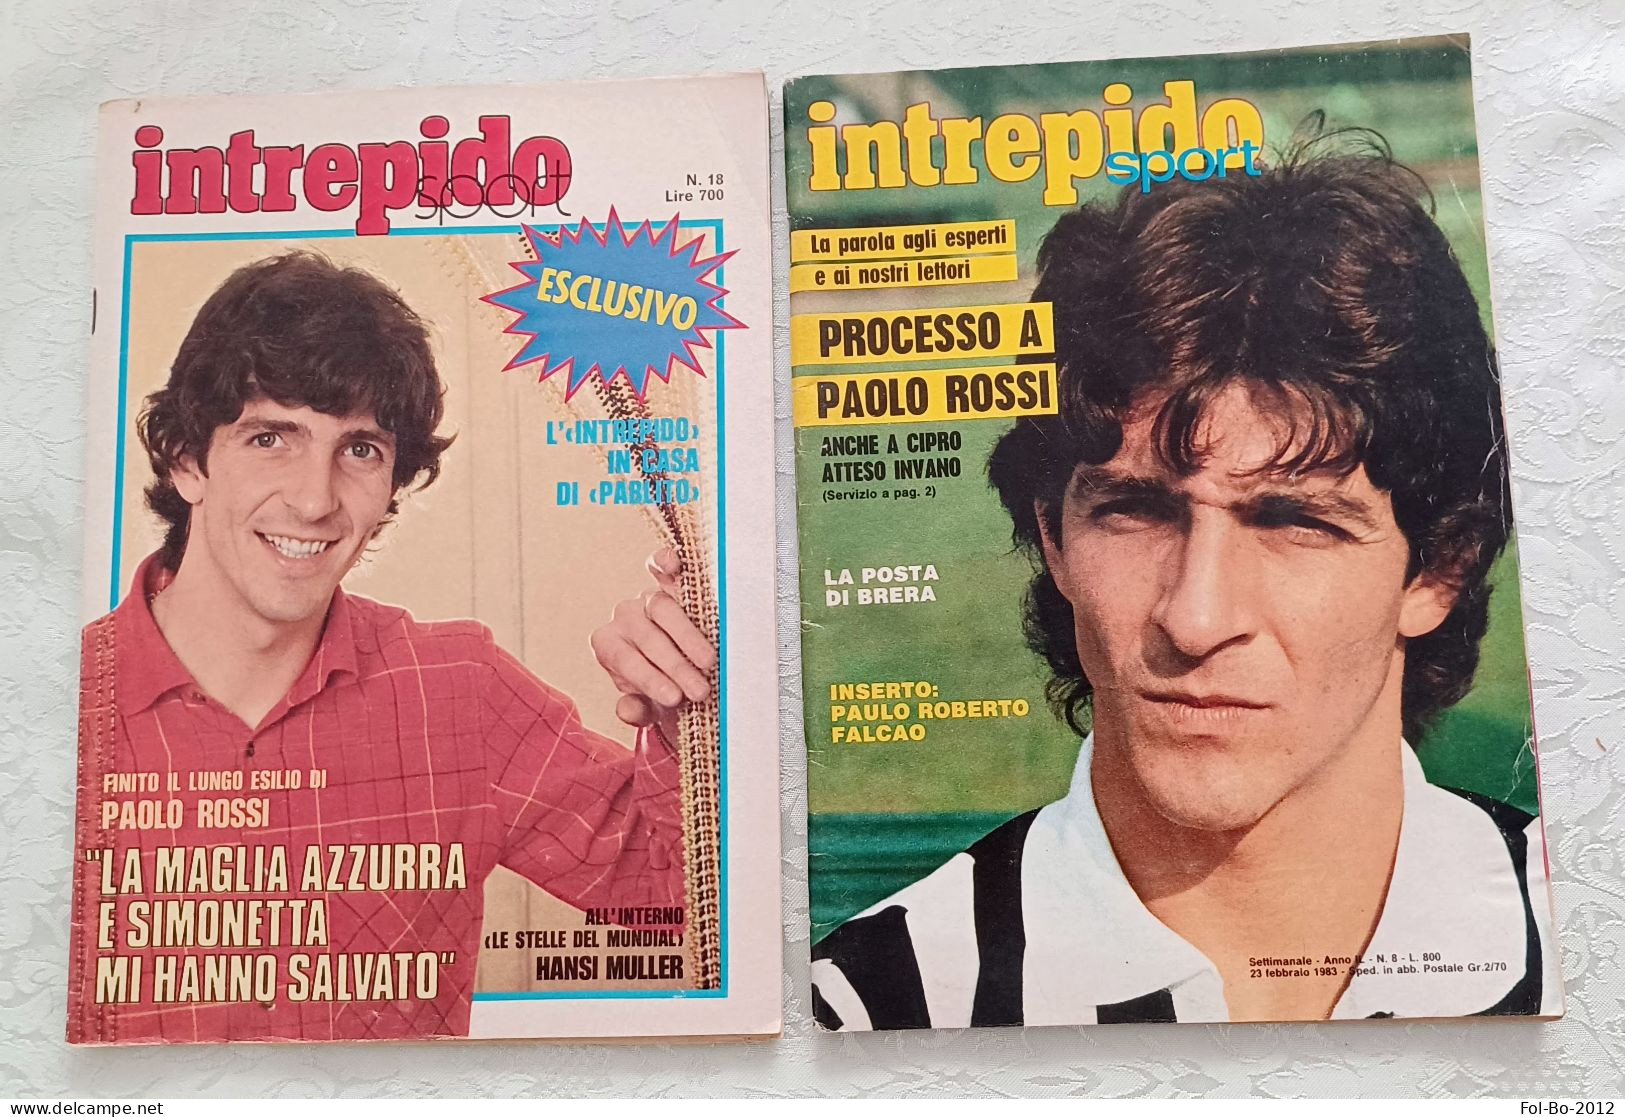 Paolo Rossi.intrepido N 18 1982 N 8.1983 - Erstauflagen